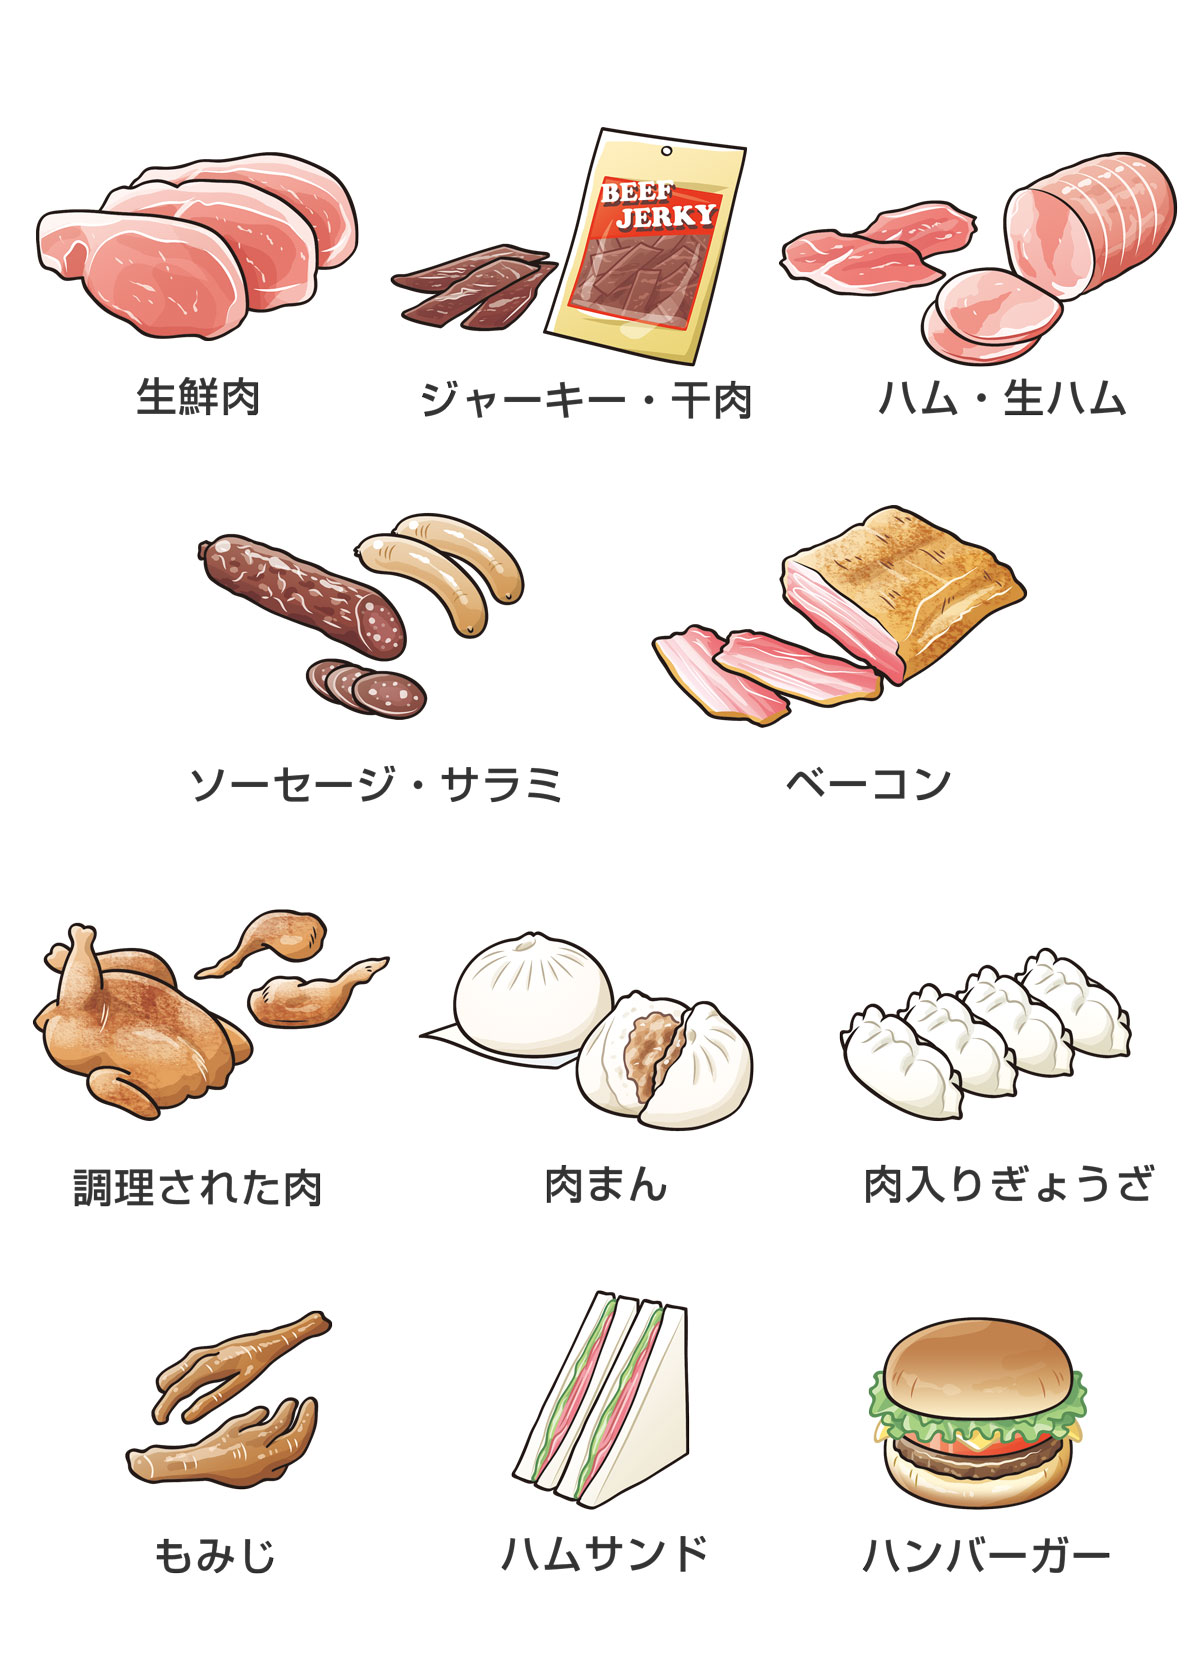 持込み禁止の肉や肉製品の例を示したイラスト。生鮮肉、ジャーキー・干肉、ハム・生ハム、ソーセージ・サラミ、ベーコン、調理された肉、肉まん、肉入りぎょうざ、もみじ、ハムサンド、ハンバーガー。